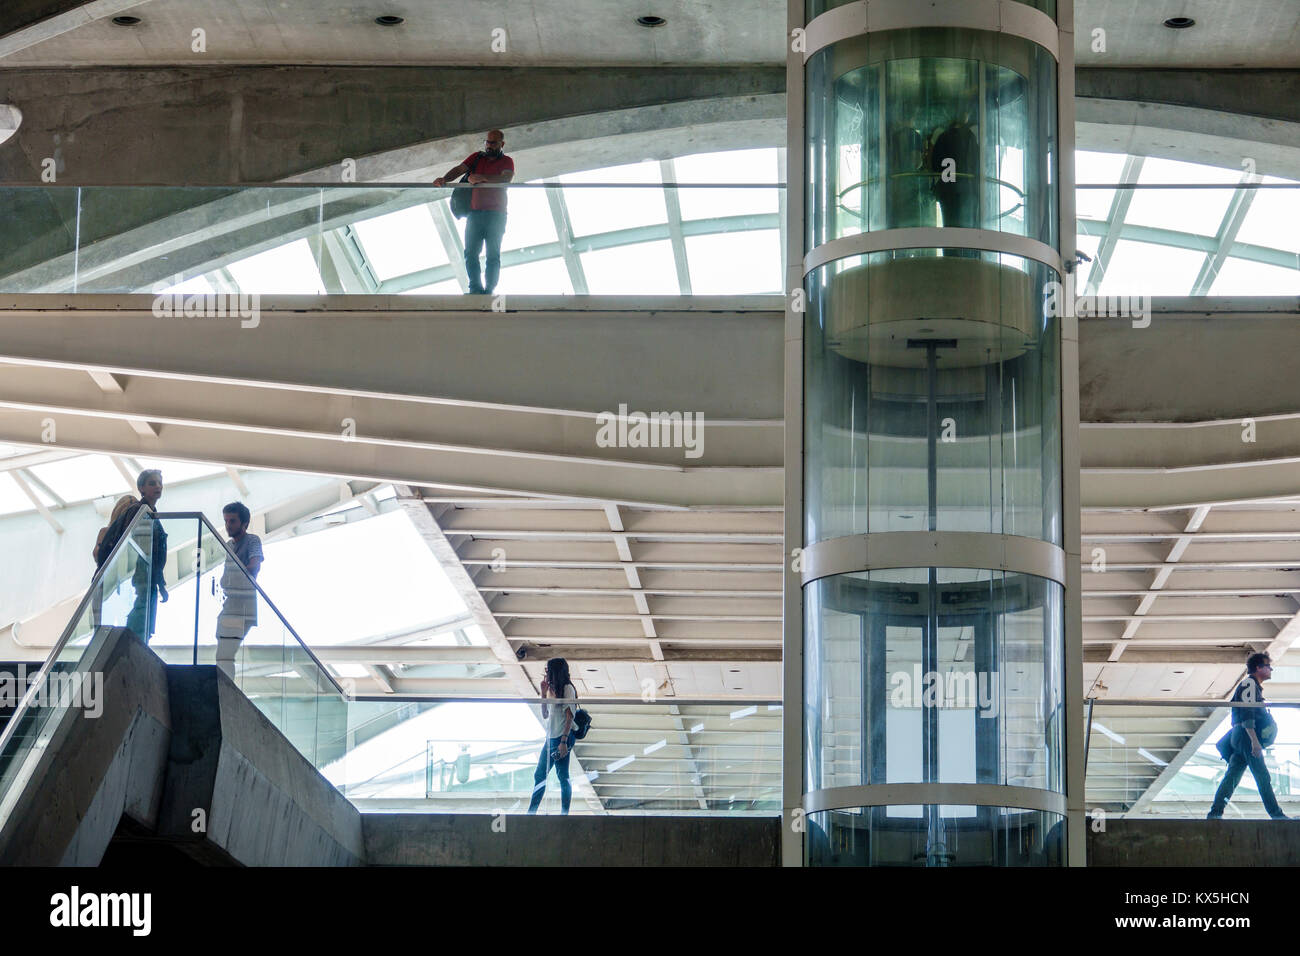 Lisbona Portogallo,Oriente,Gare do Oriente,centro intermodale,trasporto,stazione,Santiago Calatrava,architettura moderna,ponte pedonale,ascensore in vetro, Foto Stock